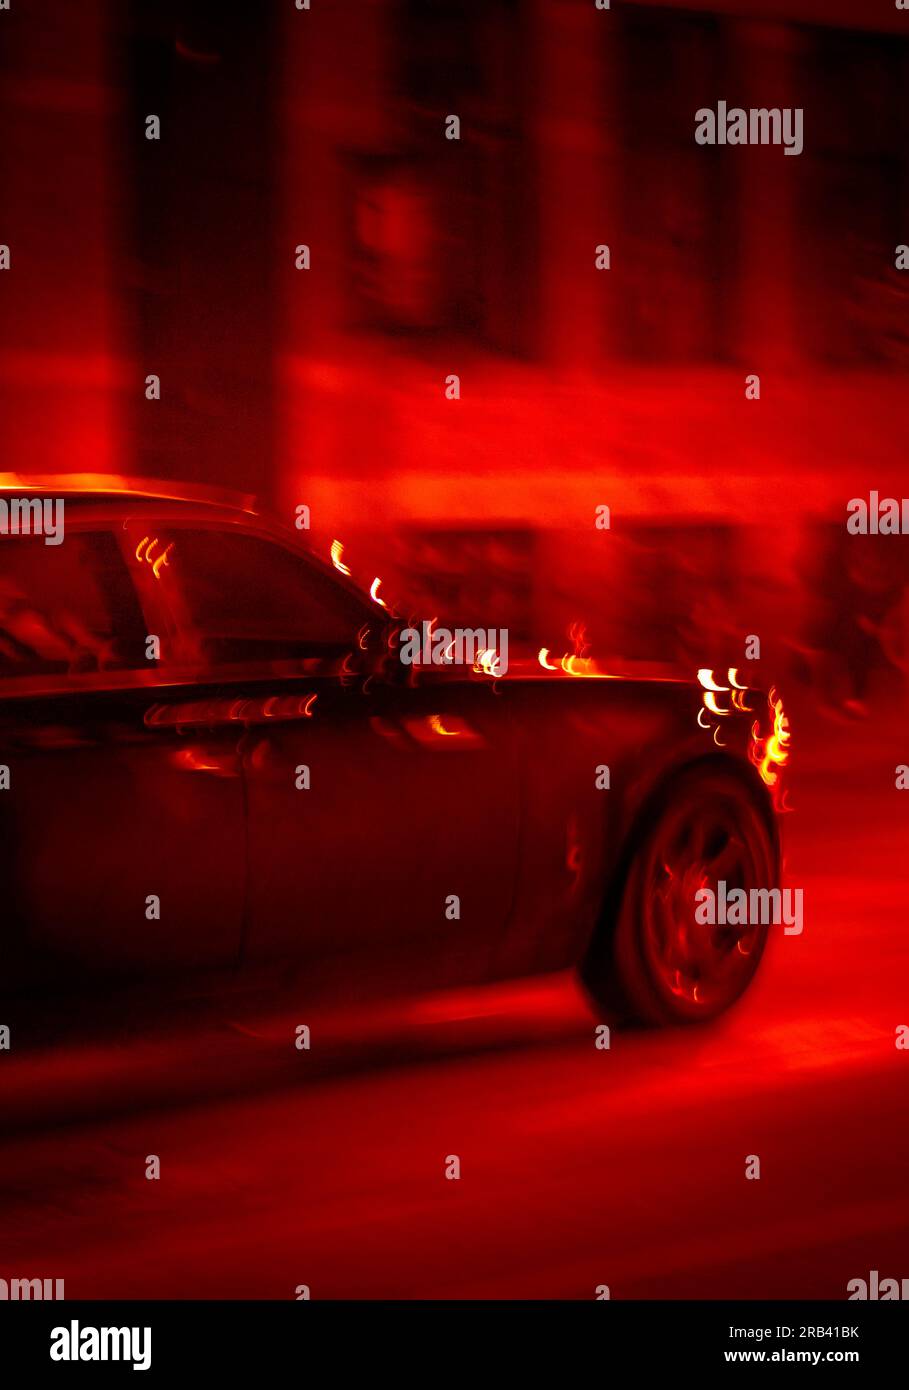 Luxury limousine speeding on a street at night Stock Photo